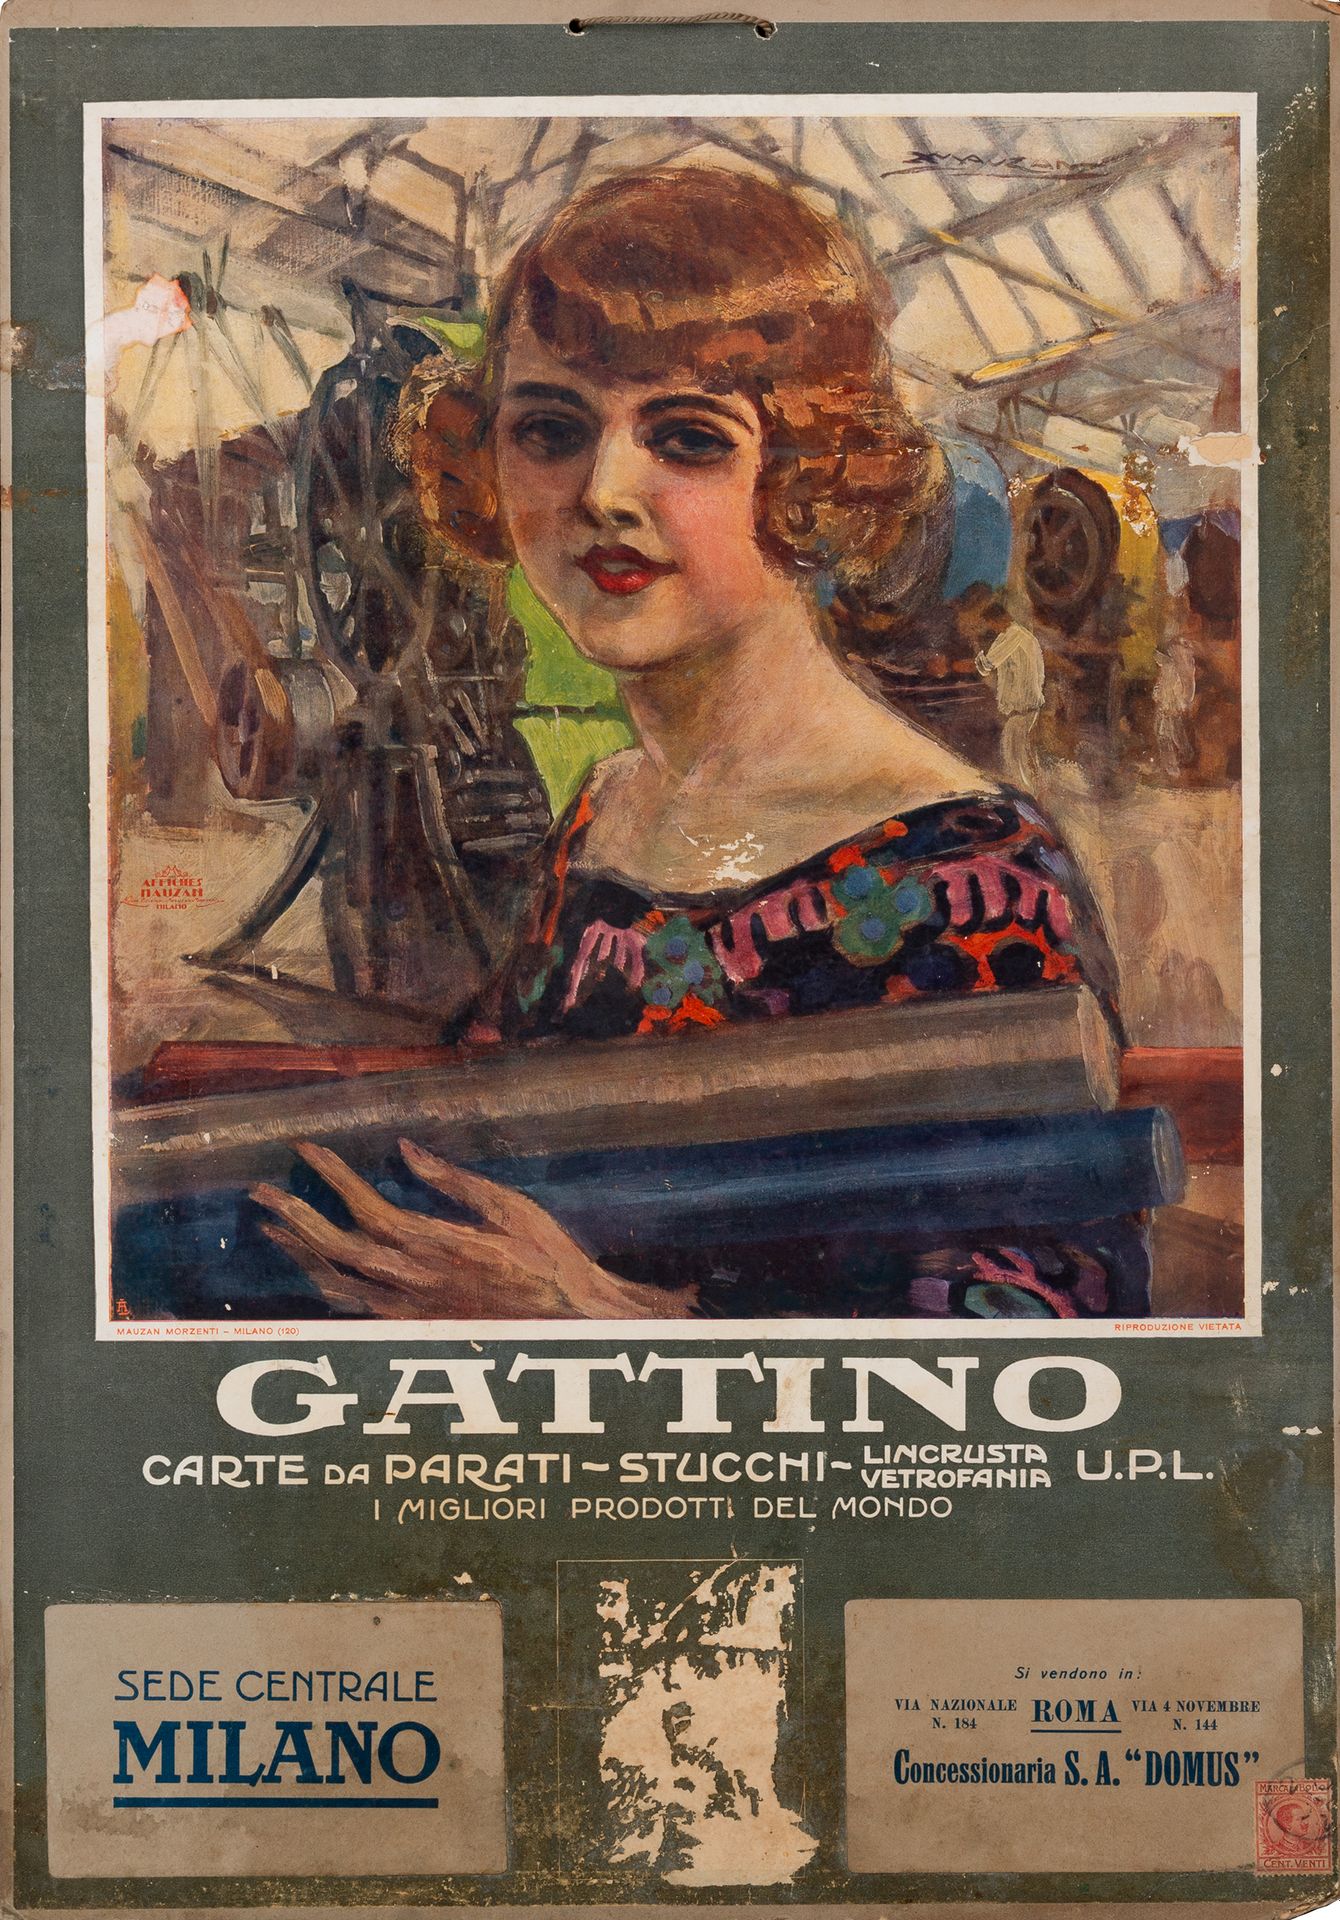 Gattino, Carte da Parati, Milano [Concessionaria S.A. Domus, Roma]
Cartone Calen&hellip;